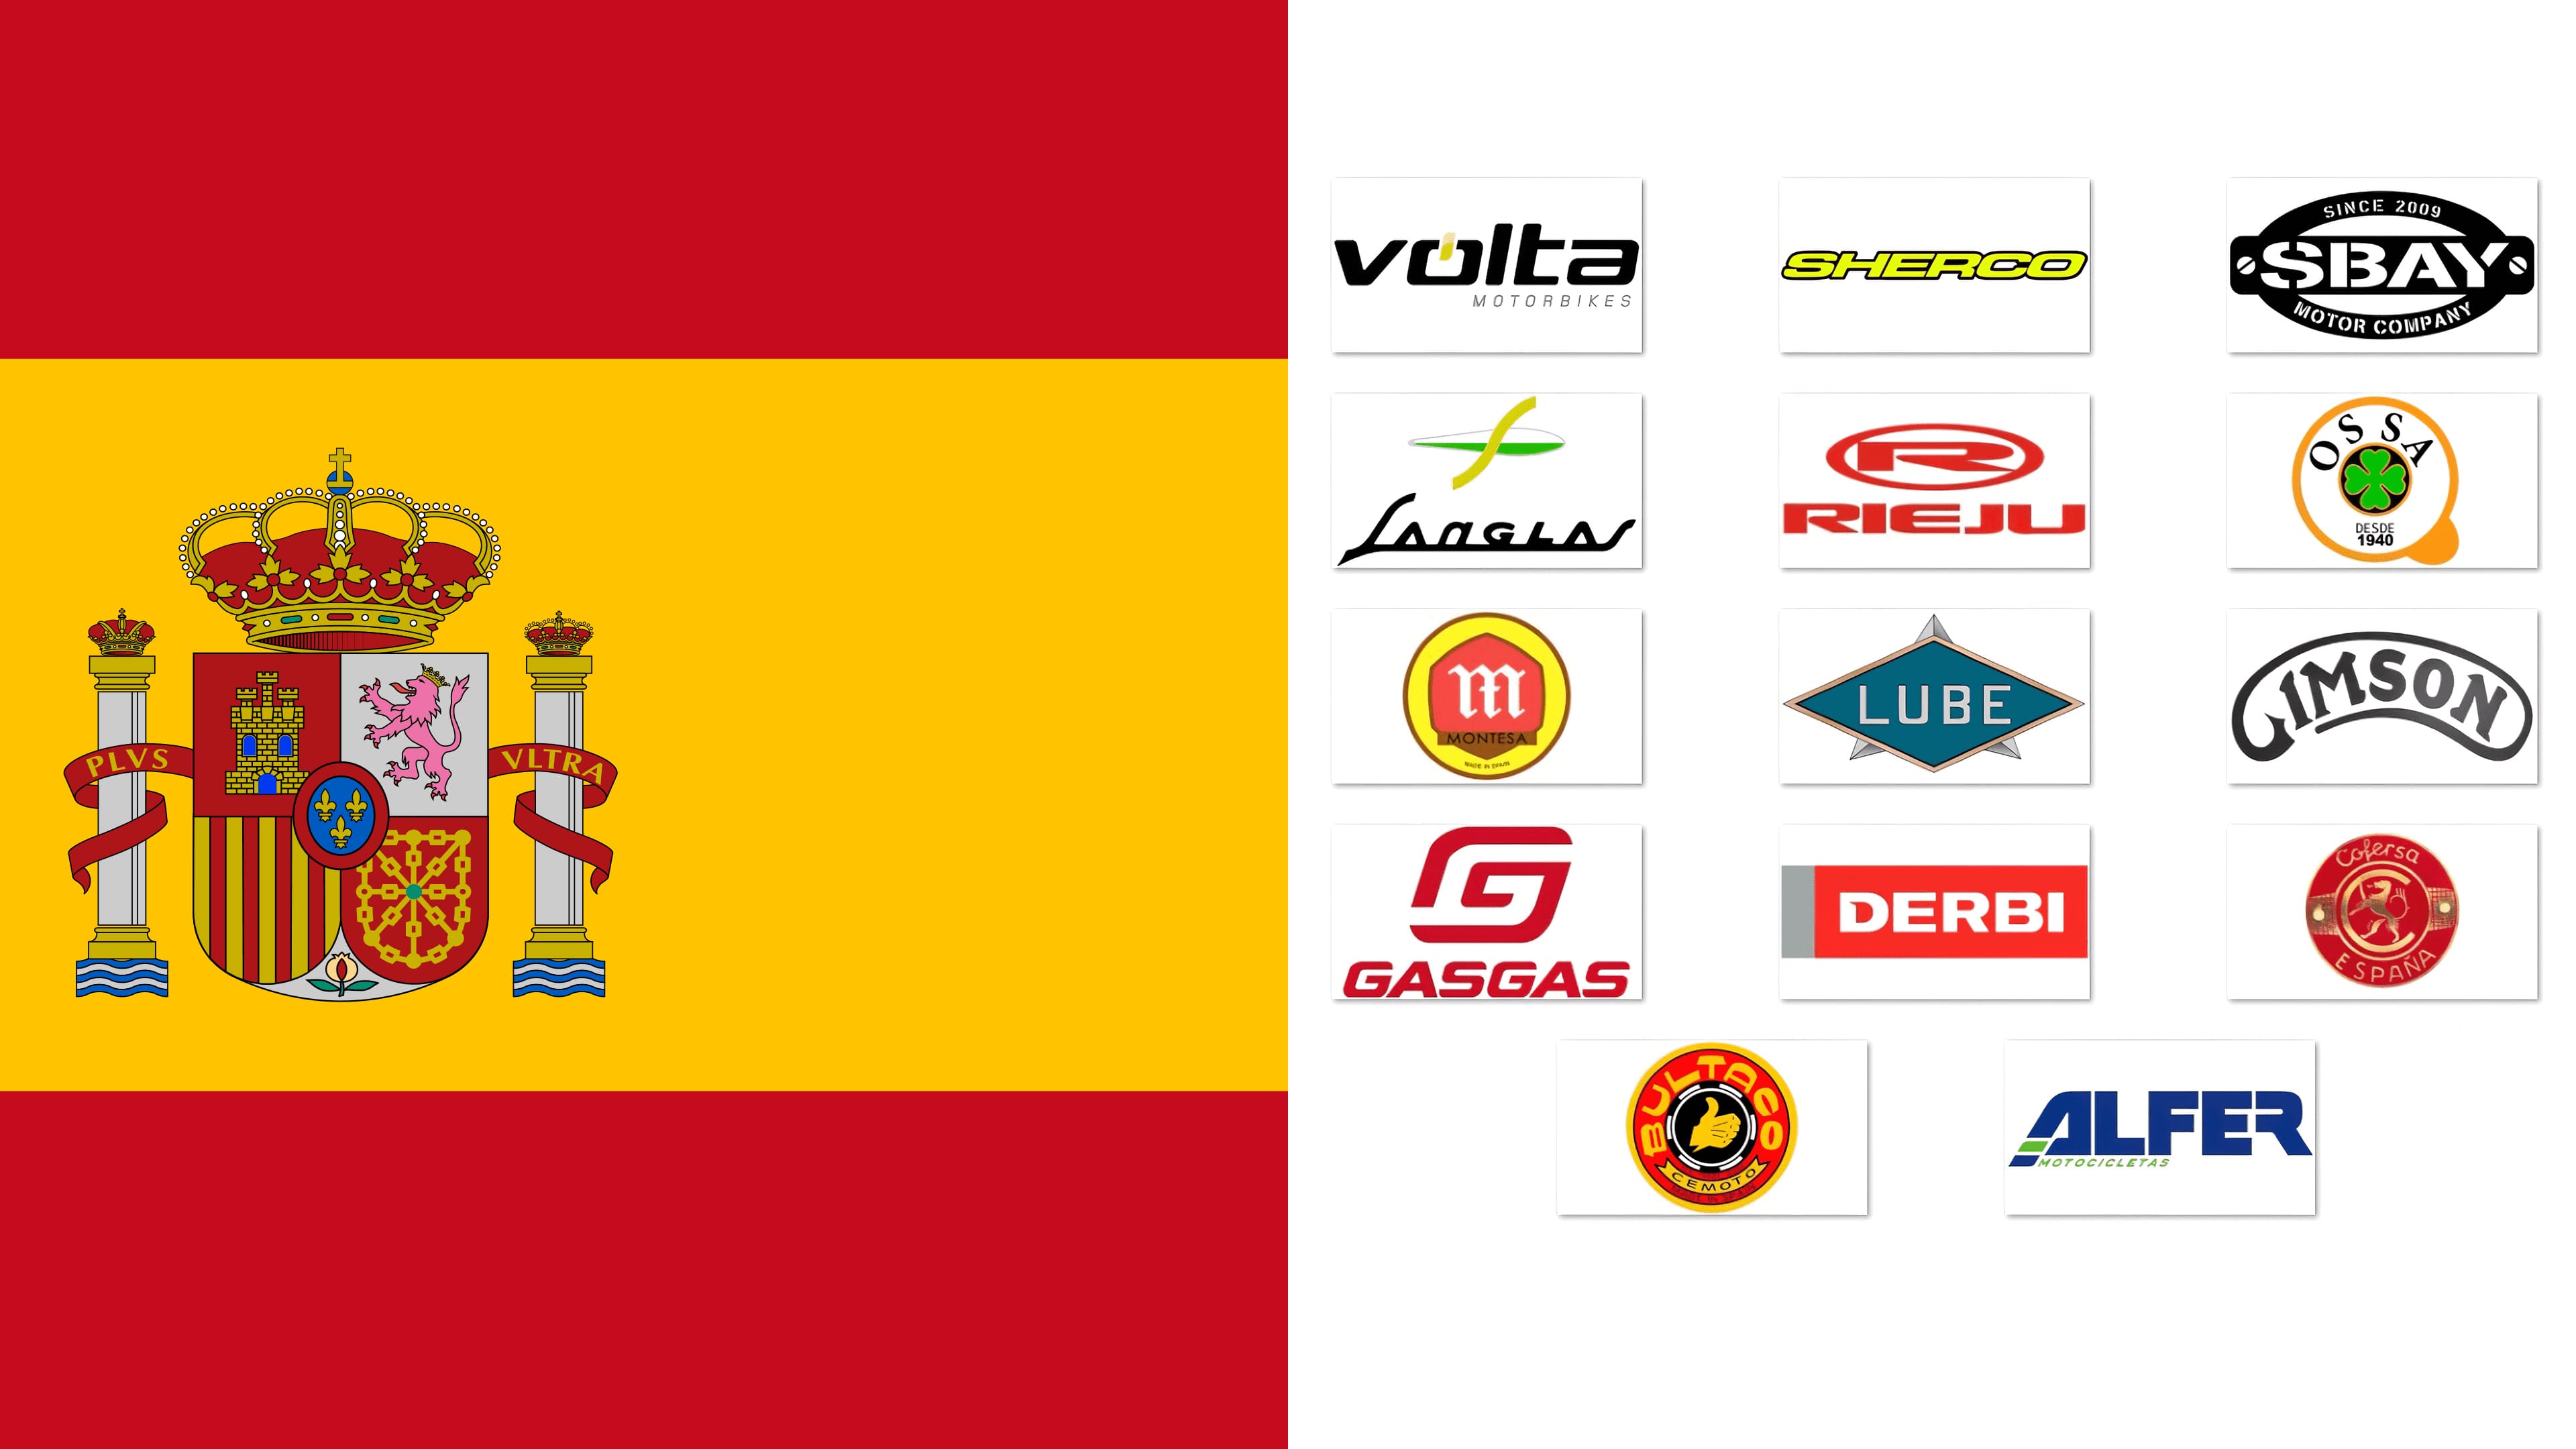 Marcas de motocicletas de España